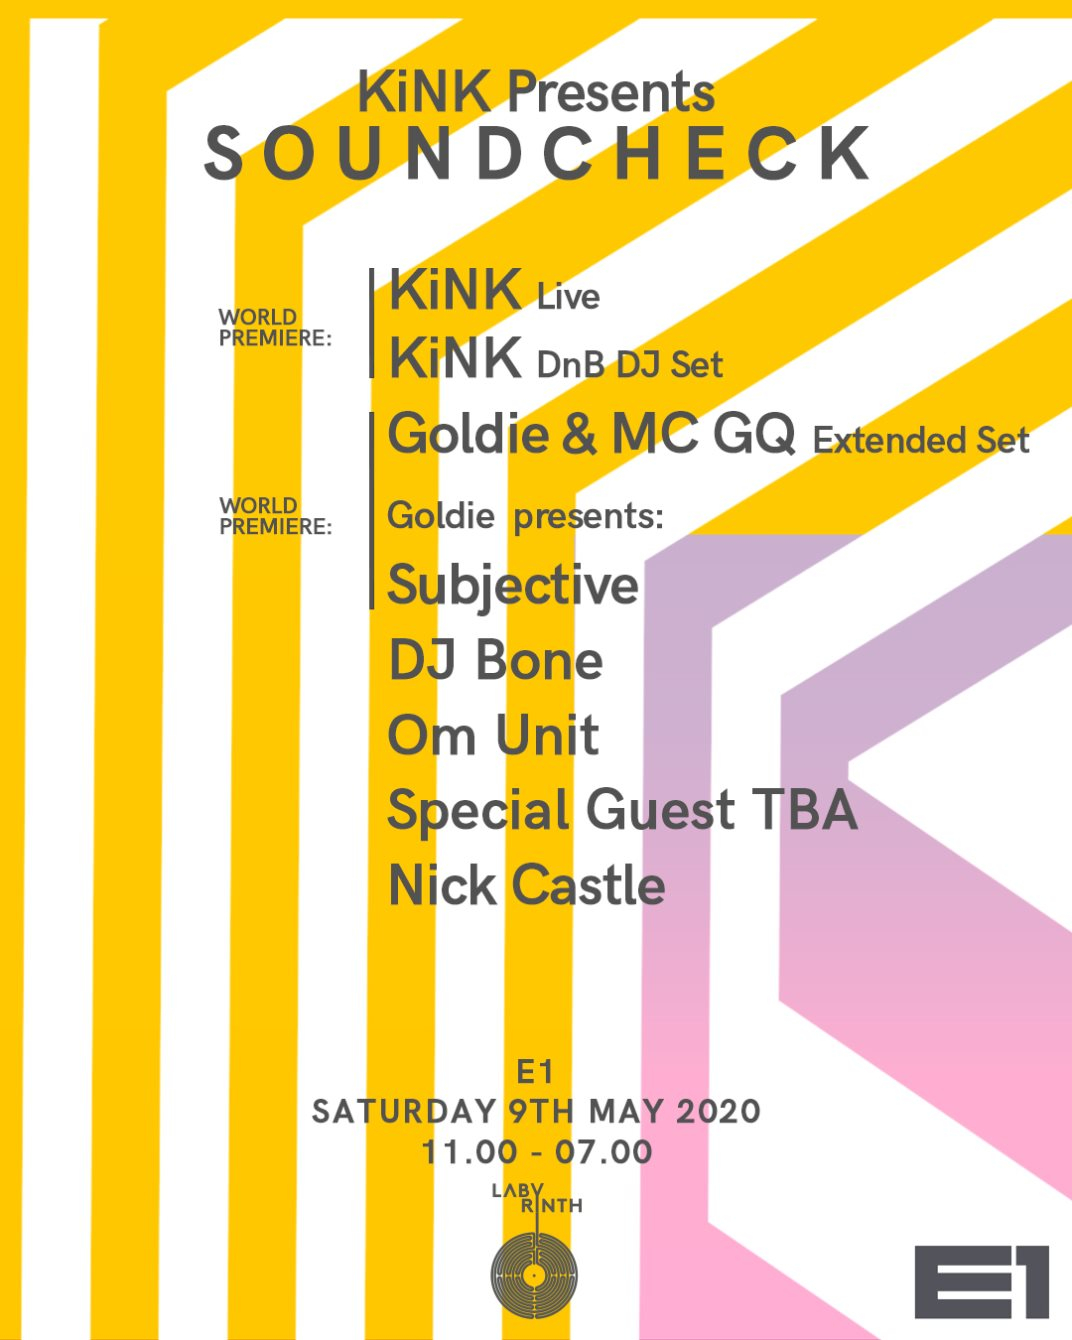 [CANCELLED] KiNK presents Soundcheck: KiNK Live & DnB DJ Set, Goldie, DJ Bone, Om Unit & More - Flyer front